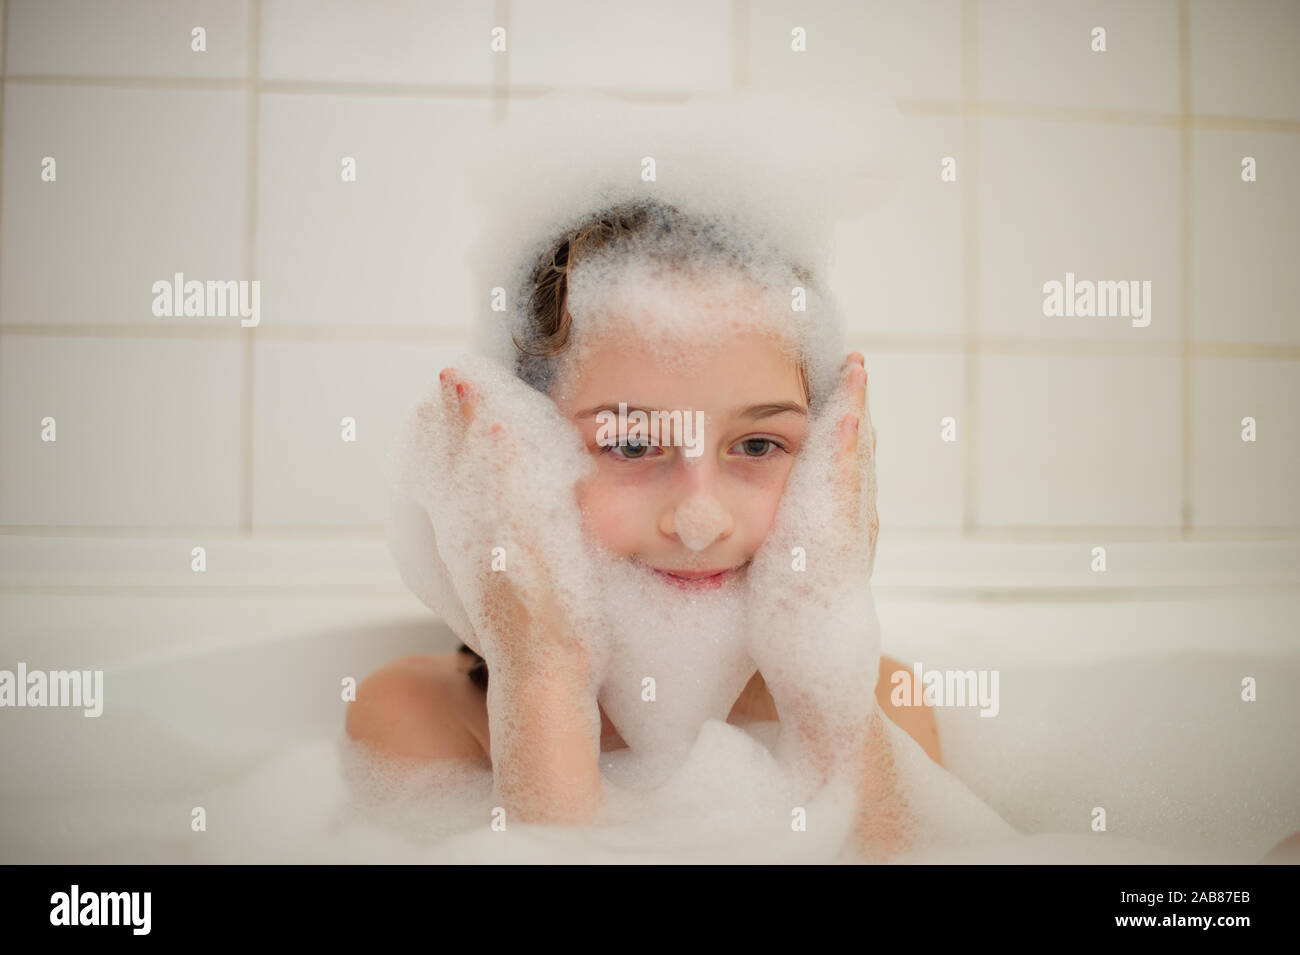 Junge Mädchen In Der Badewanne Ein Kleines Mädchen Taucht In Der Badewanne Mit Schaum Ein 